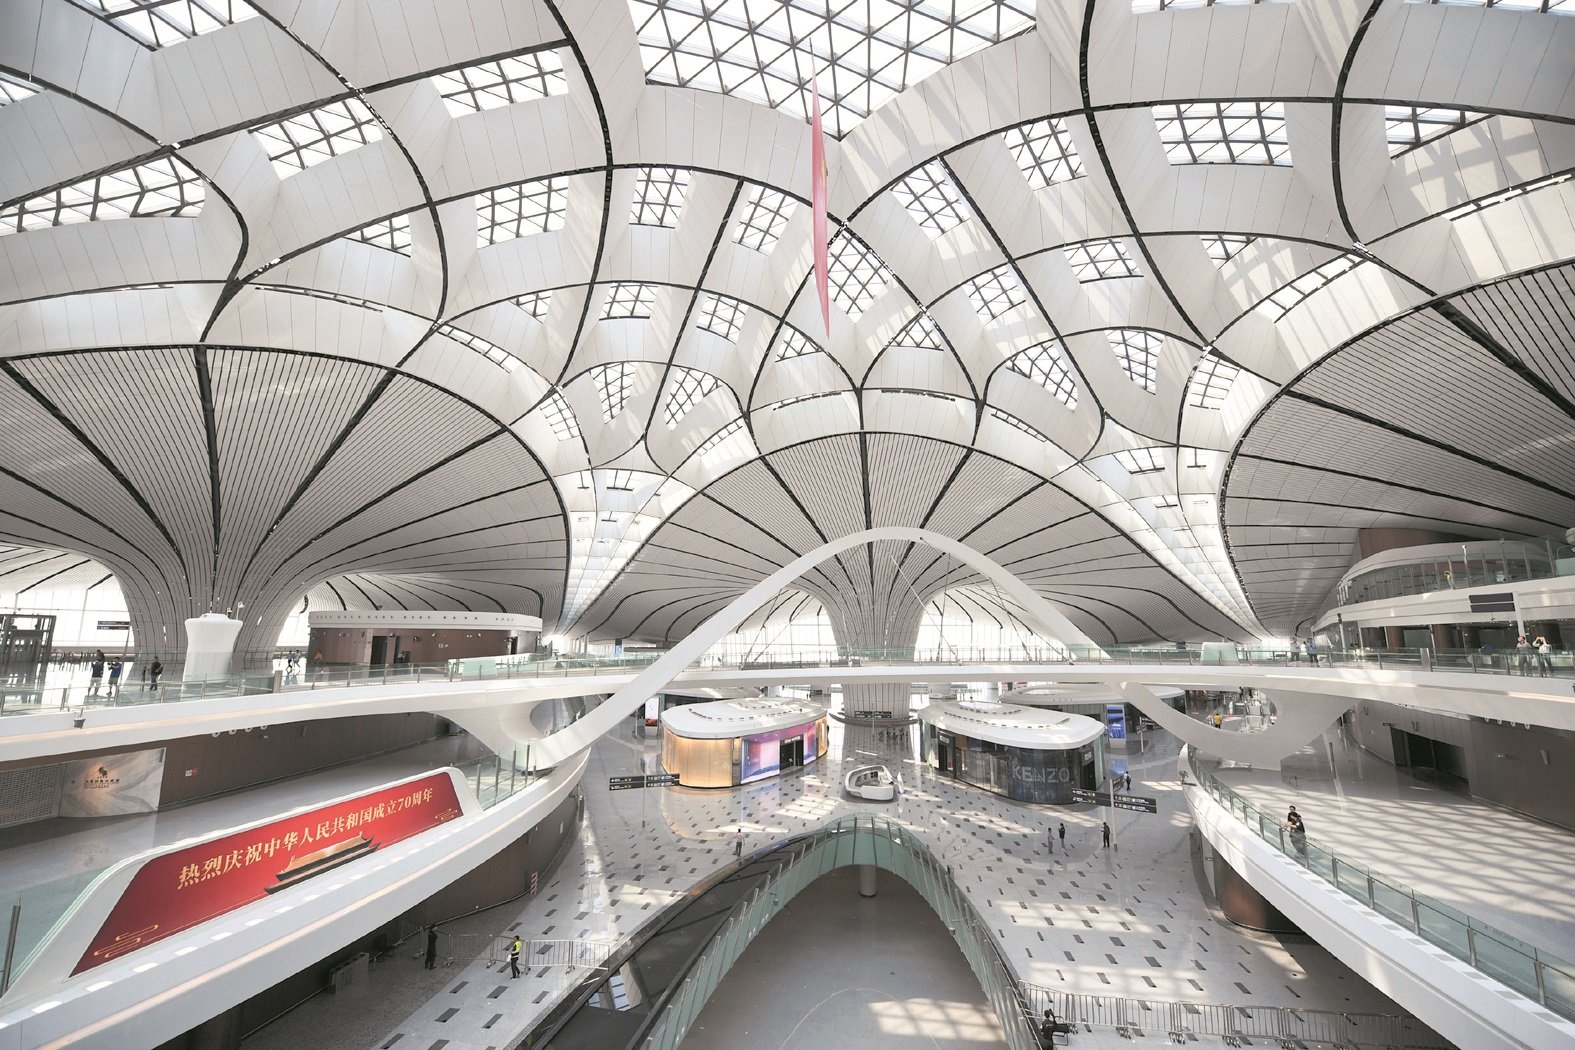 北京大兴国际机场拥有全球首座高铁地下穿行的机场航站楼、全球首座双层出发双层到达的航站楼。这是机场内部景象，只见其穹顶有著自然采光设计，整体简约又不失大气。